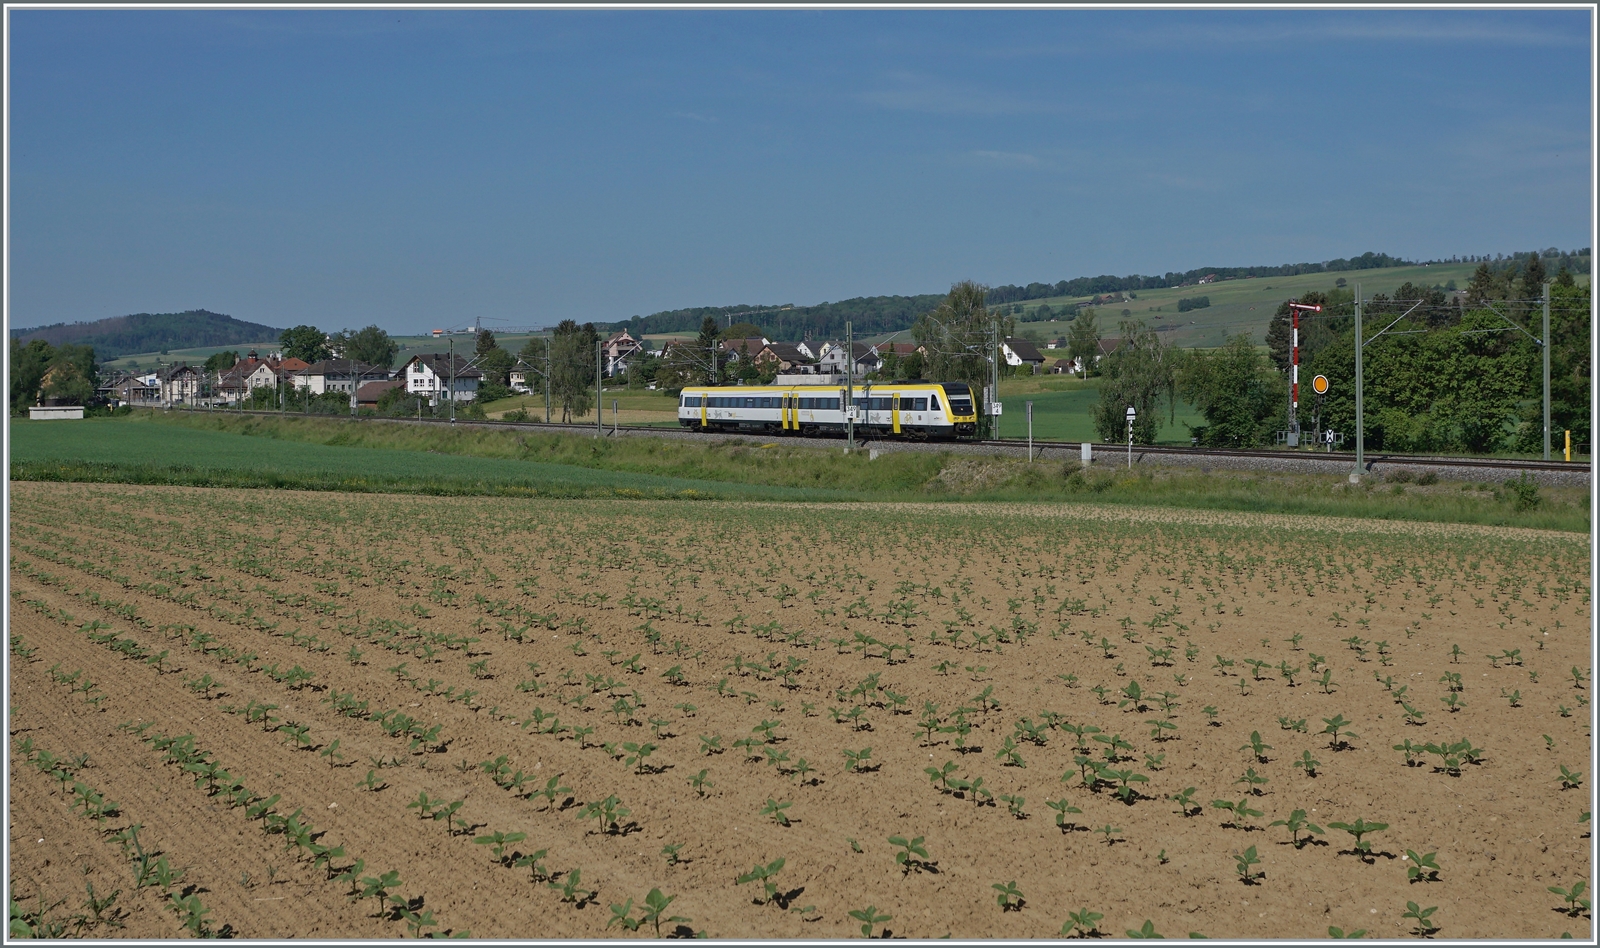 Ein DV VT 612 im Klettgau bei Neunkirch auf dem Weg nach Schaffhausen. Die Strecke im schweizerischen Klettgau gehört der DB. 

15. Mai 2022